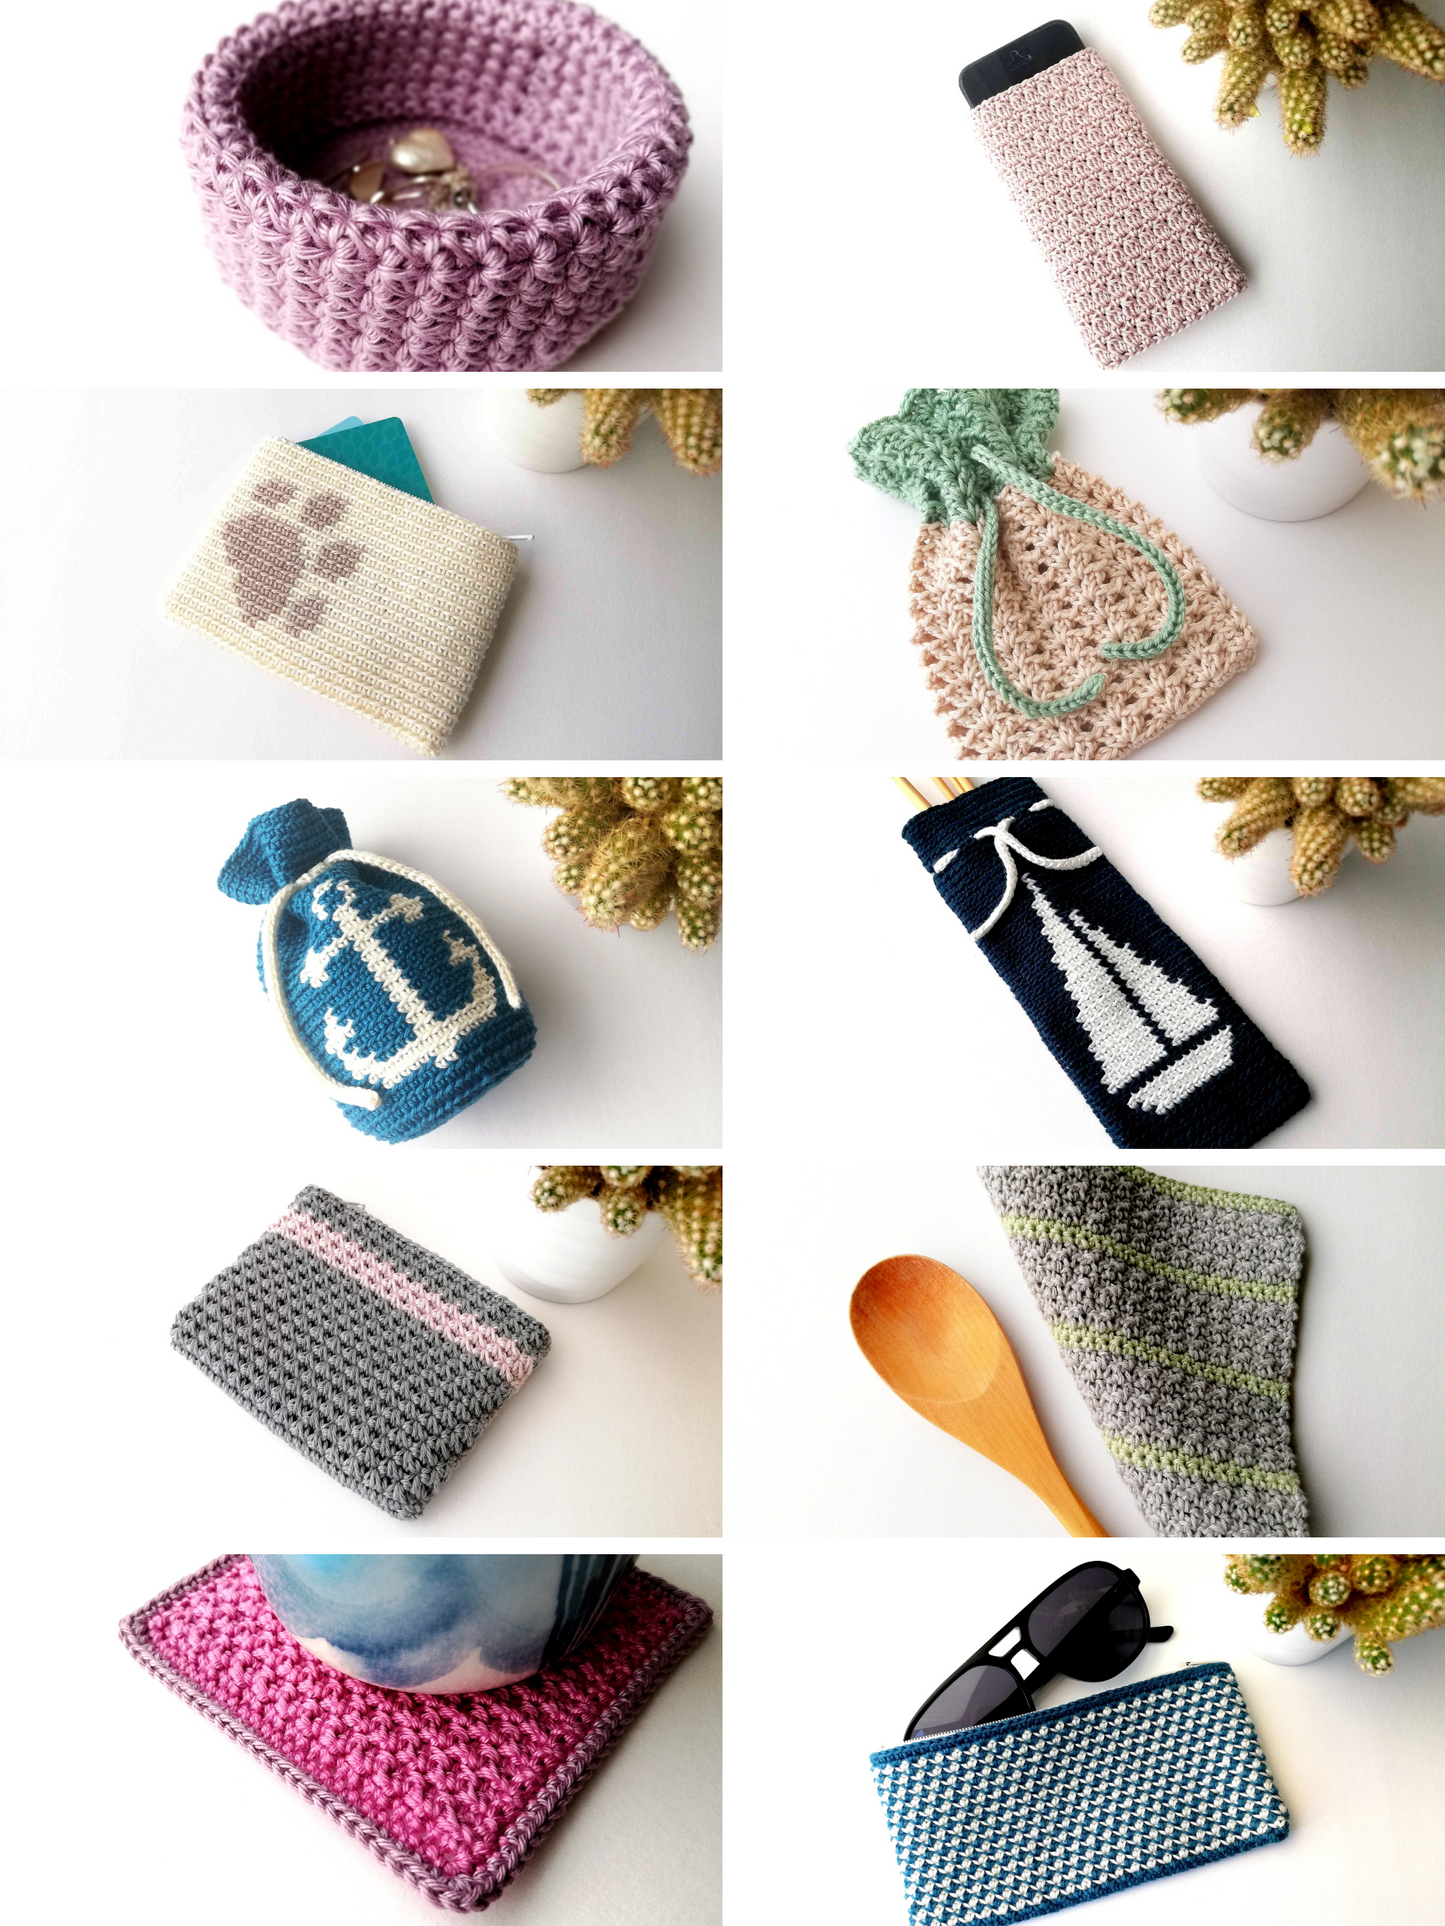 Pattern bundle: 10 summer crochet projects